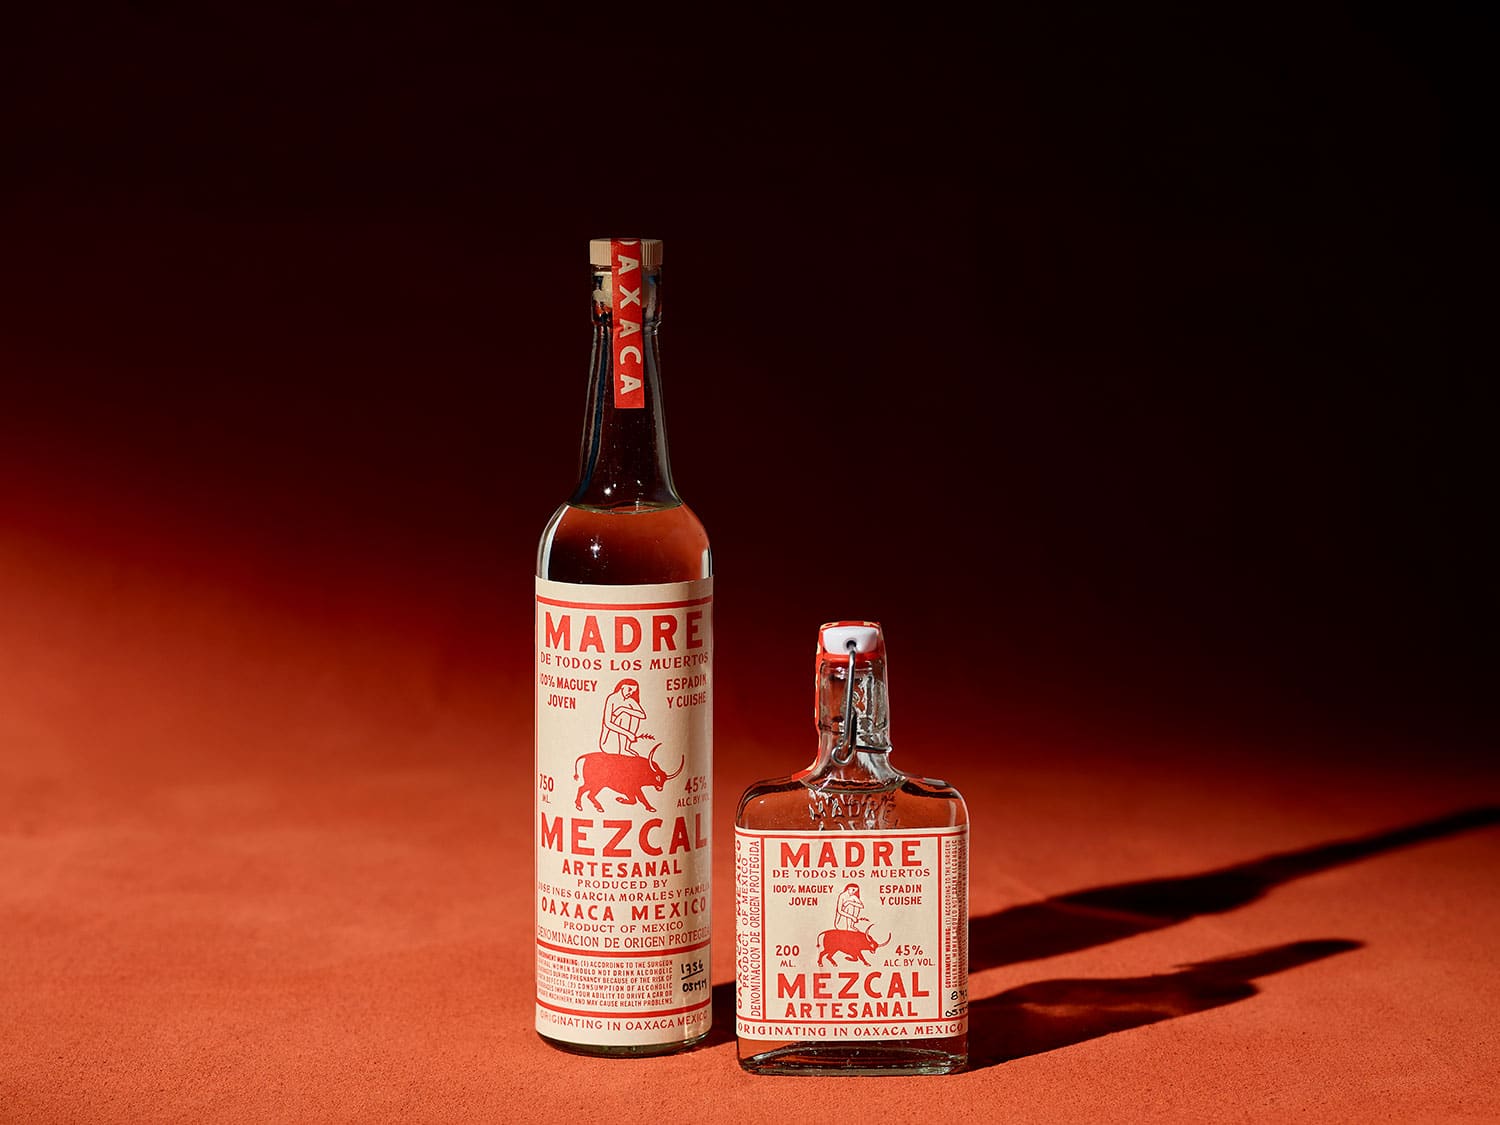 A bottle of Madre Mezcal